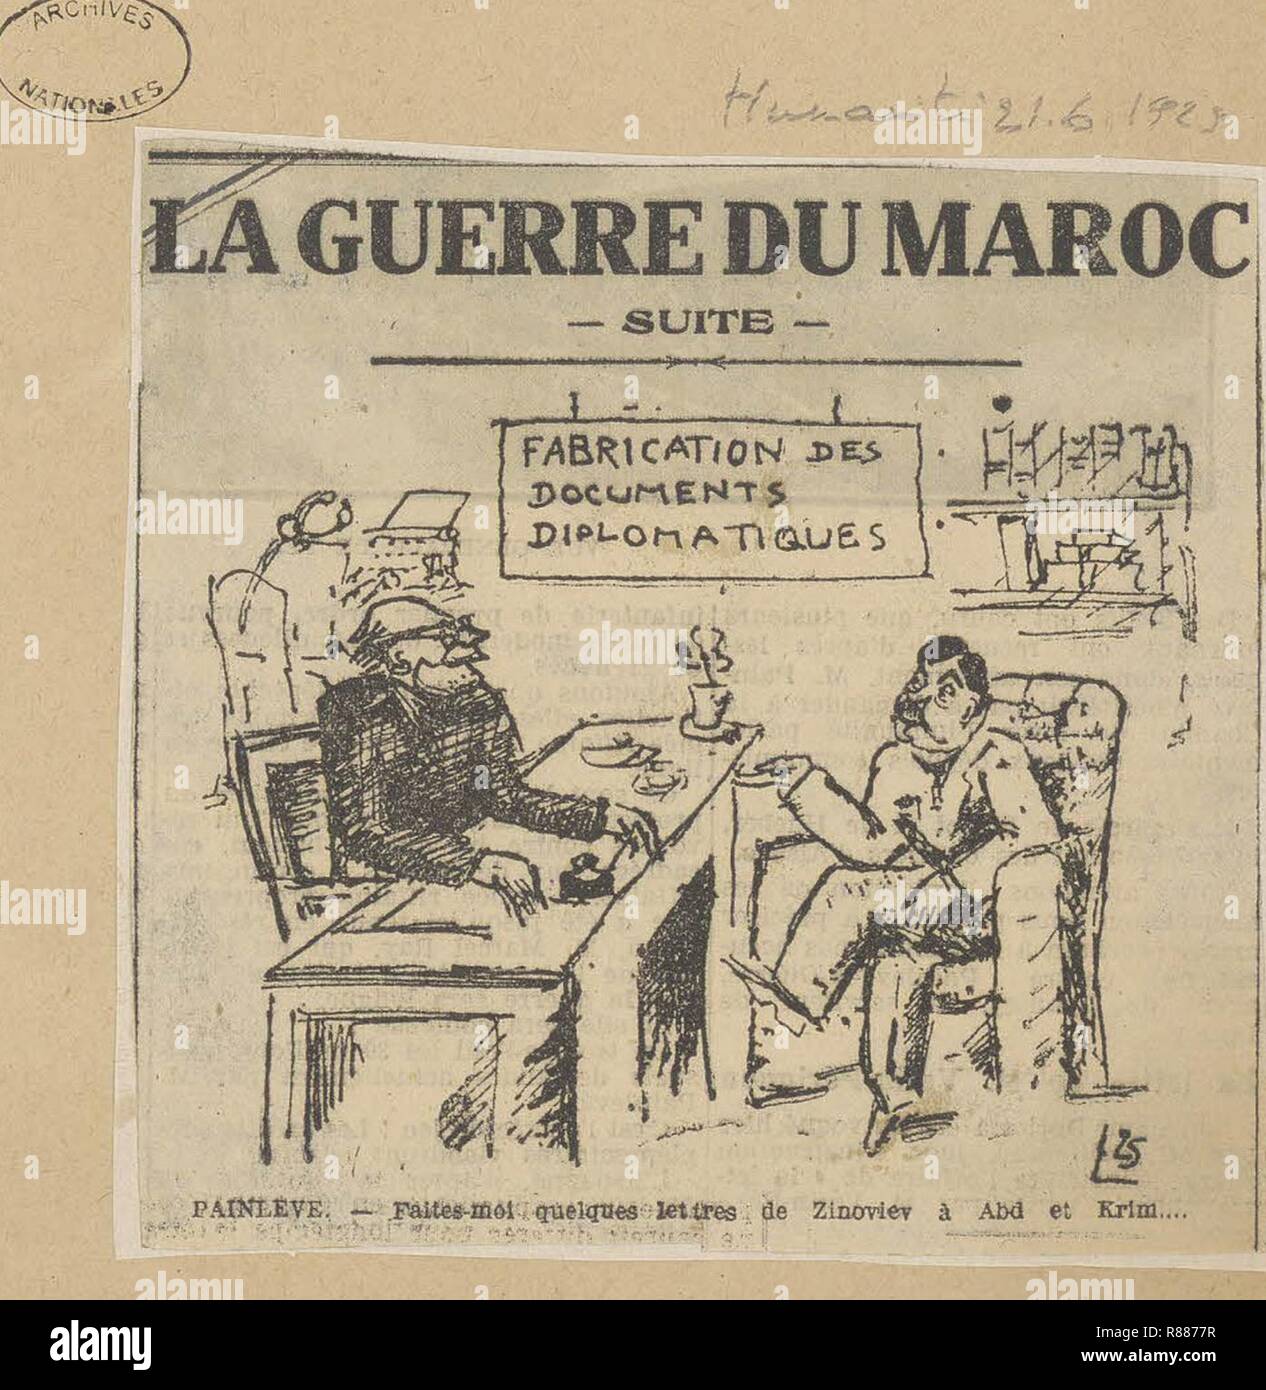 Karikatur von Paul Painlevé, Président du conseil, par laquelle Il est accusé de fabriquer de Faux-Papiers diplomatique-Archives nationales - 313 AP-20-(1). Stockfoto